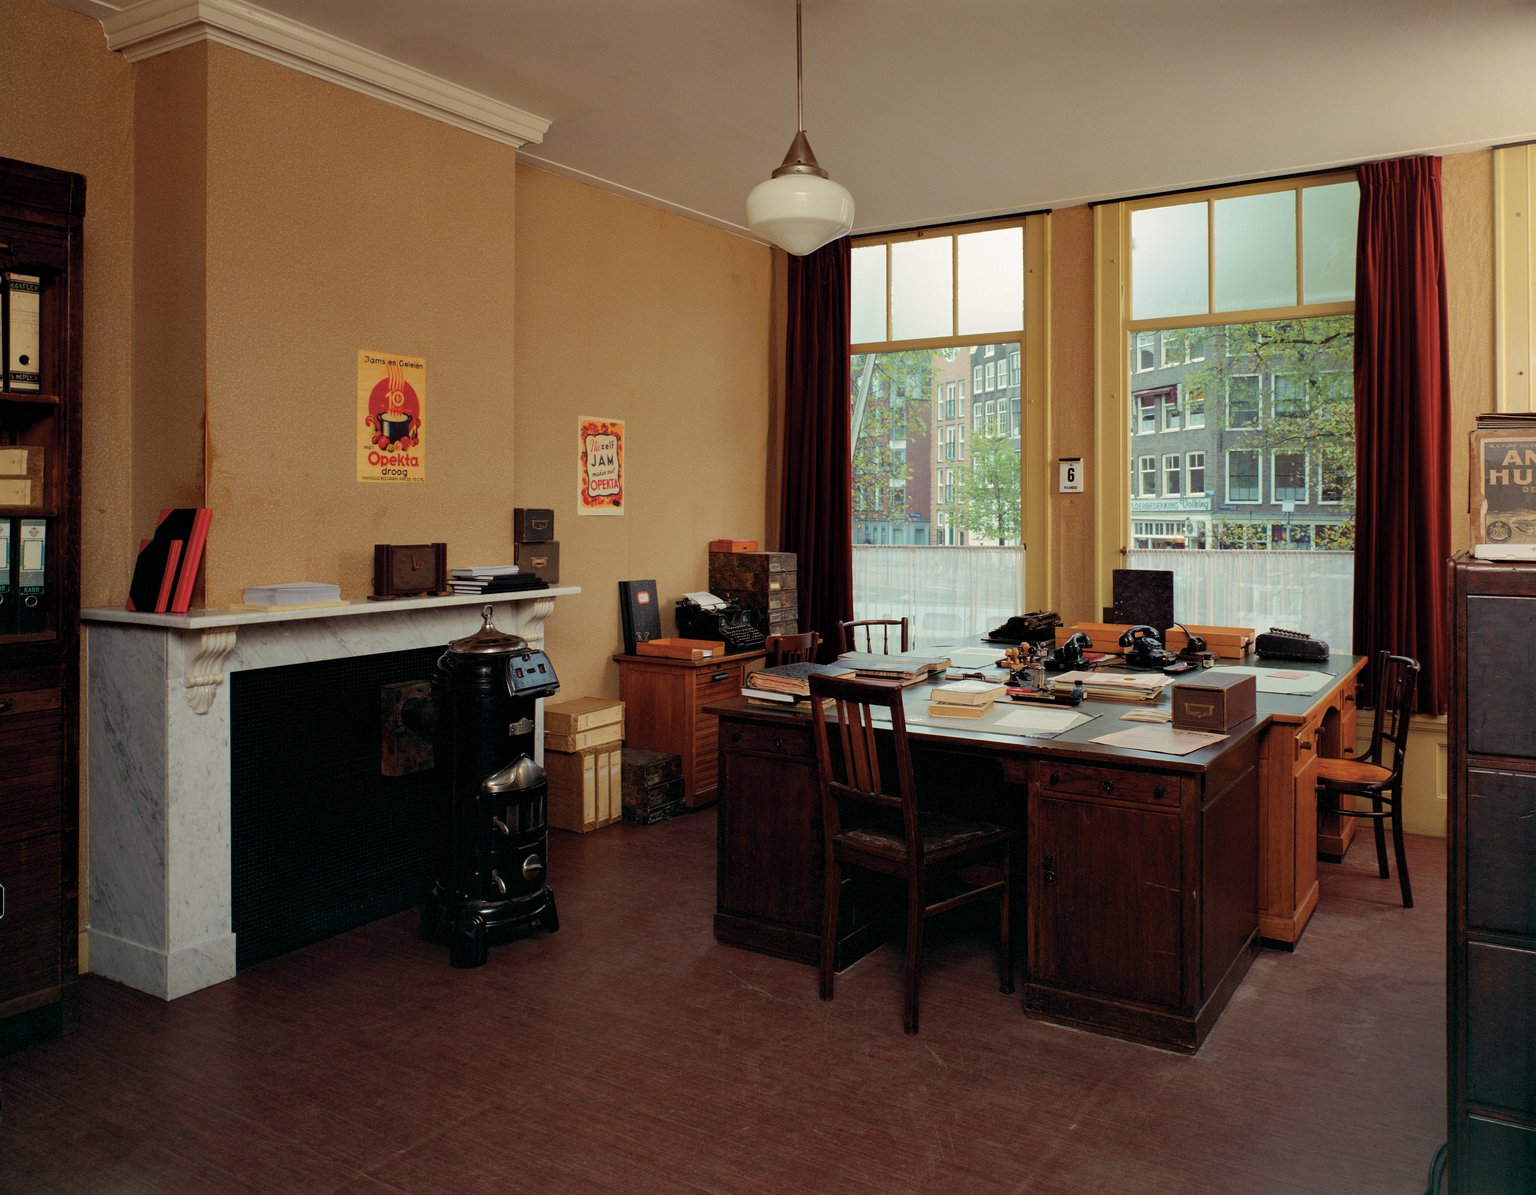 Das Büro von Miep Gies, Johannes Kleiman und Bep Voskuijl, Rekonstruktion (1999).